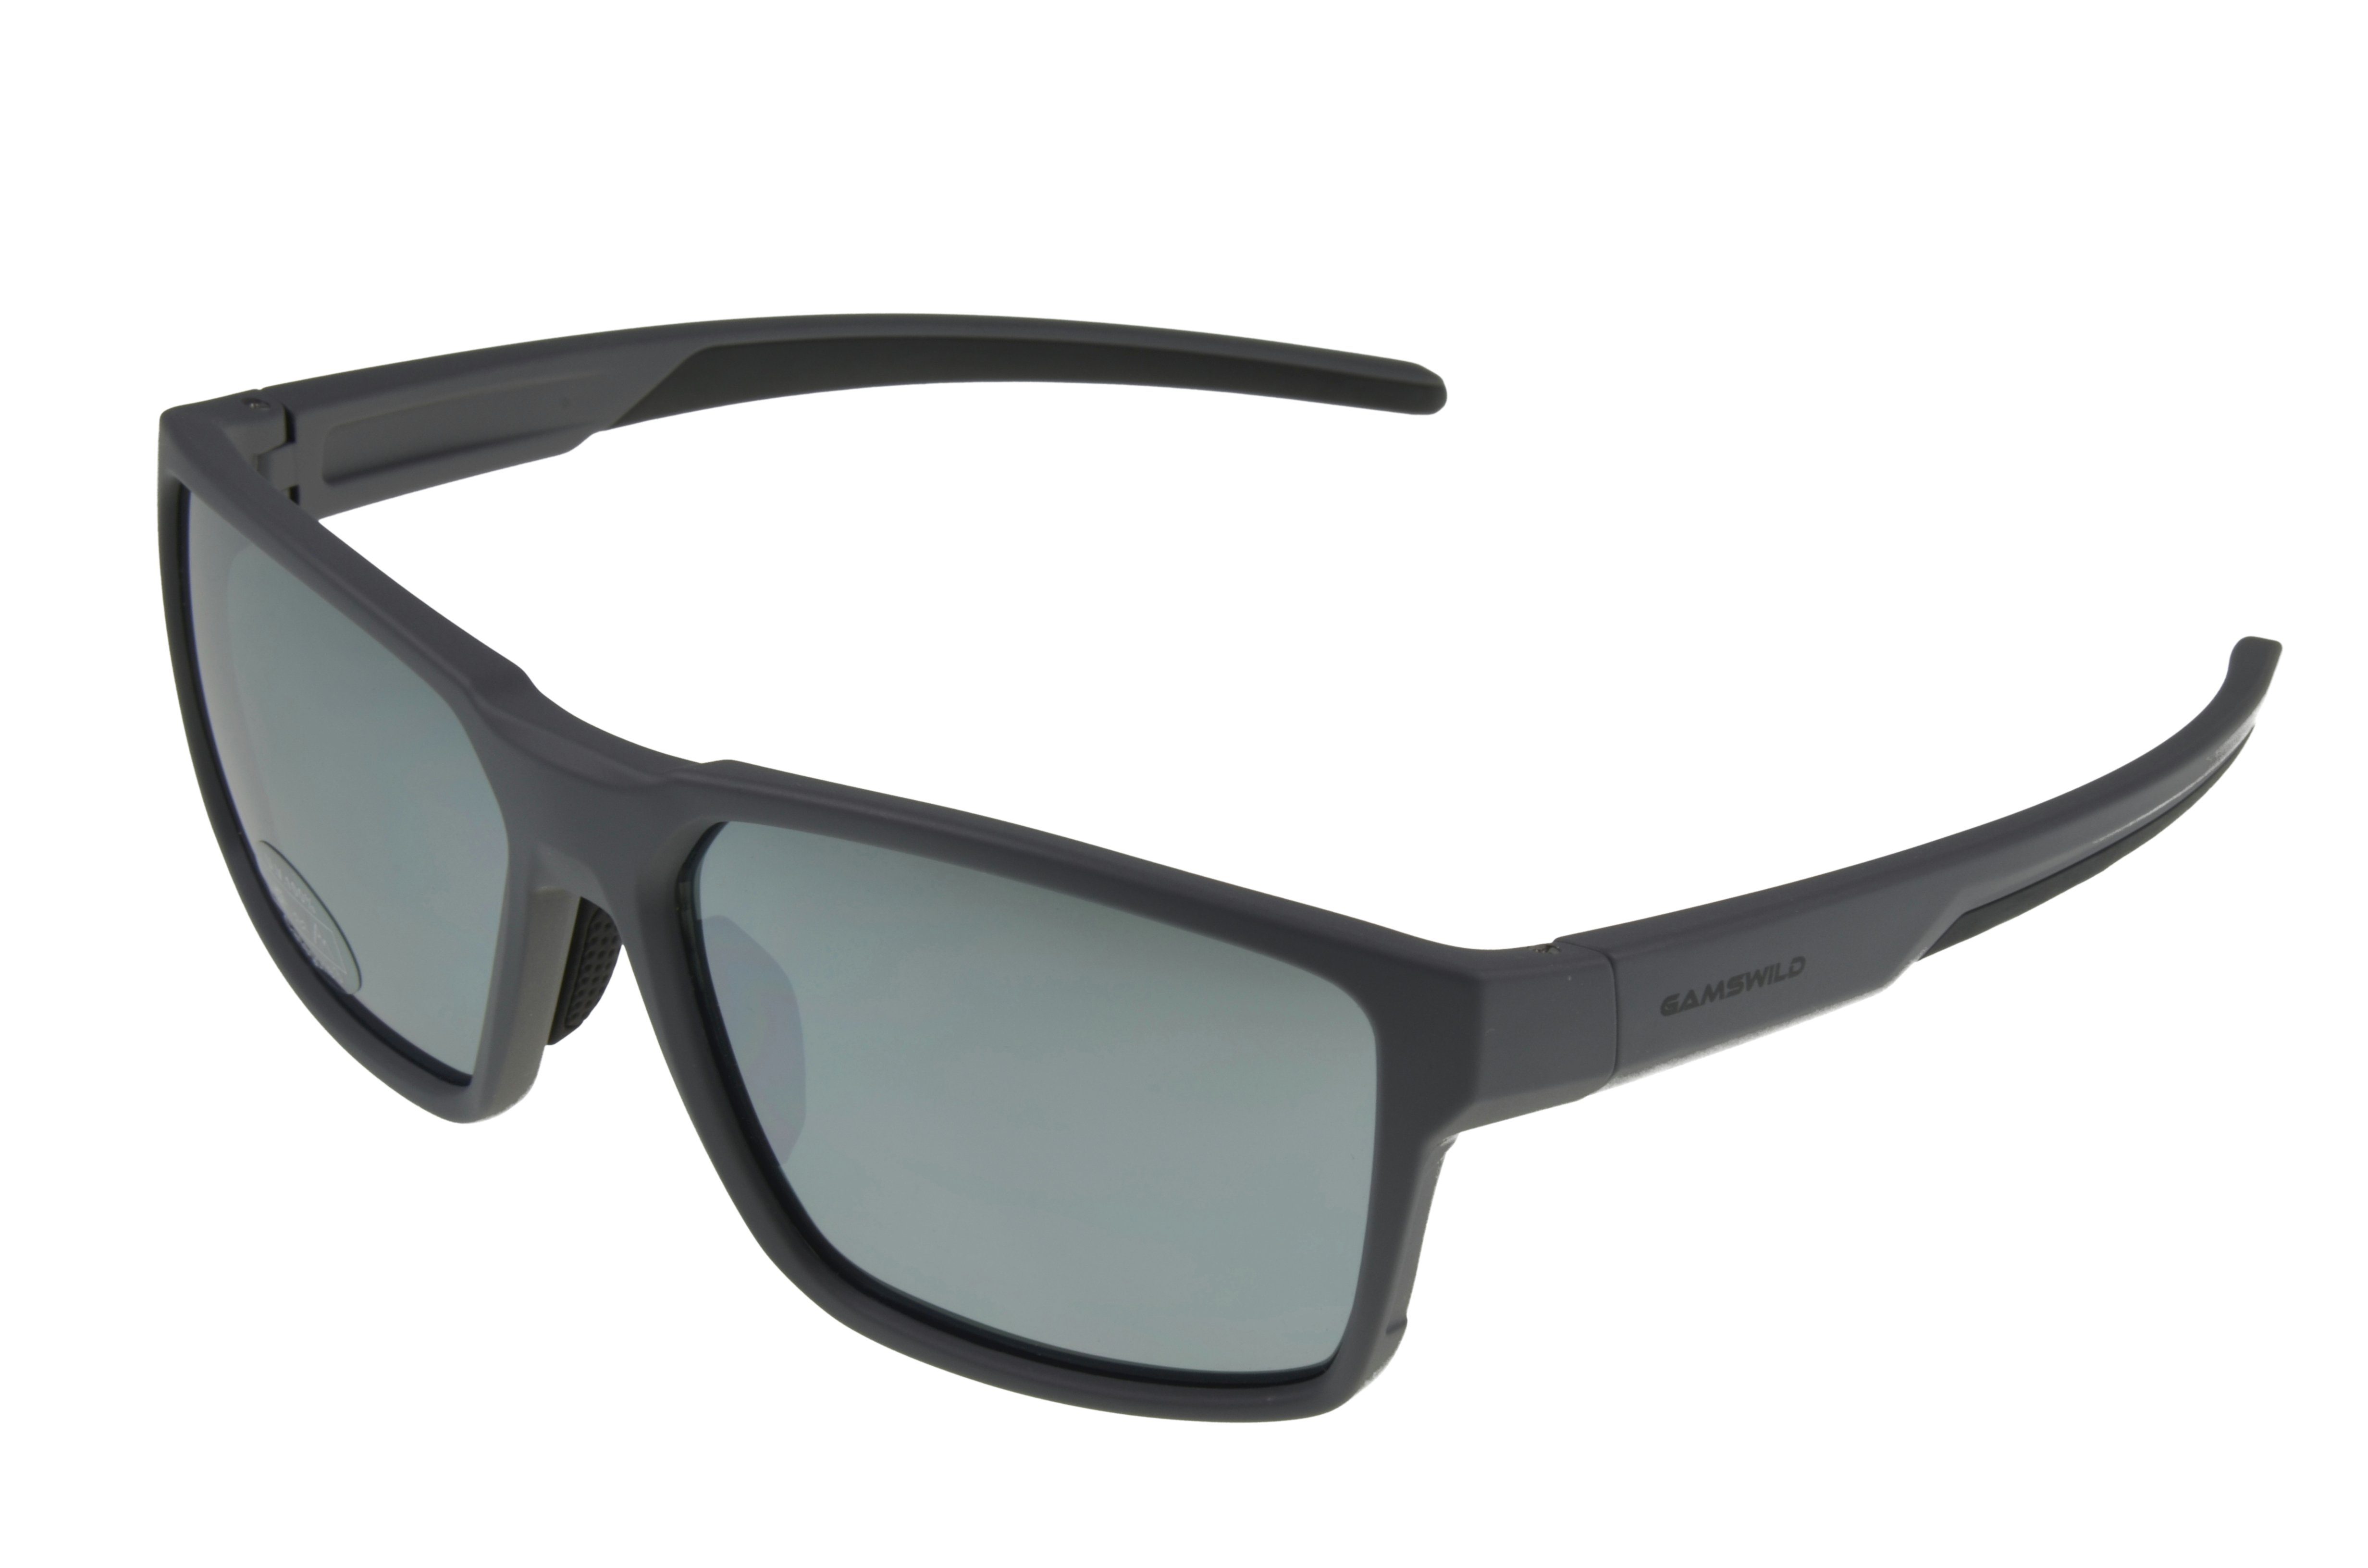 Gamswild Sonnenbrille WS5936 Sportbrille Skibrille Fahrradbrille Damen Herren Unisex getönte Gläser schwarz, grau, braun